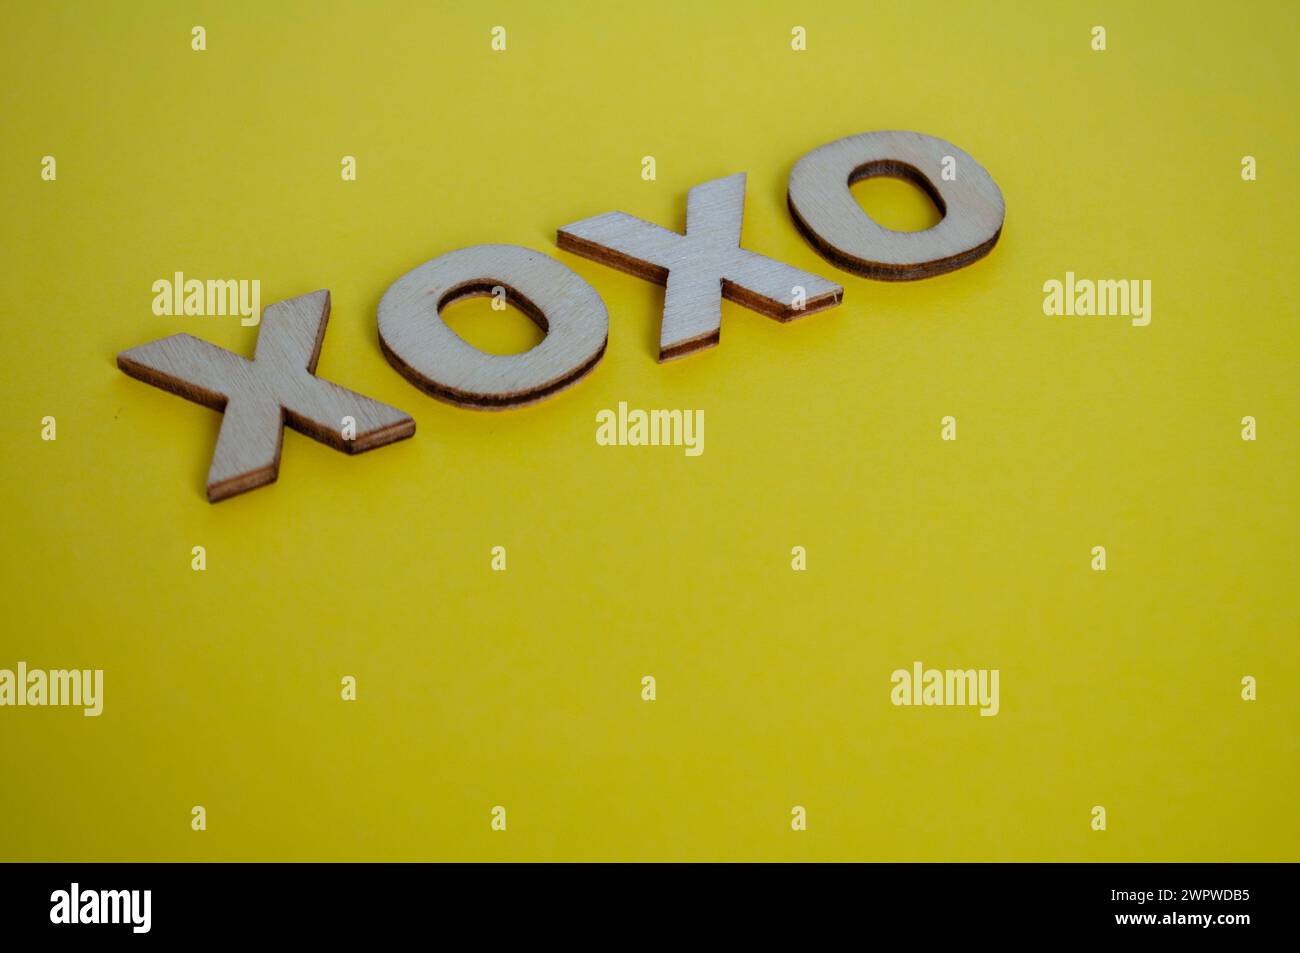 XOXO lettere in legno che rappresentano abbracci e baci su sfondo giallo. Foto Stock